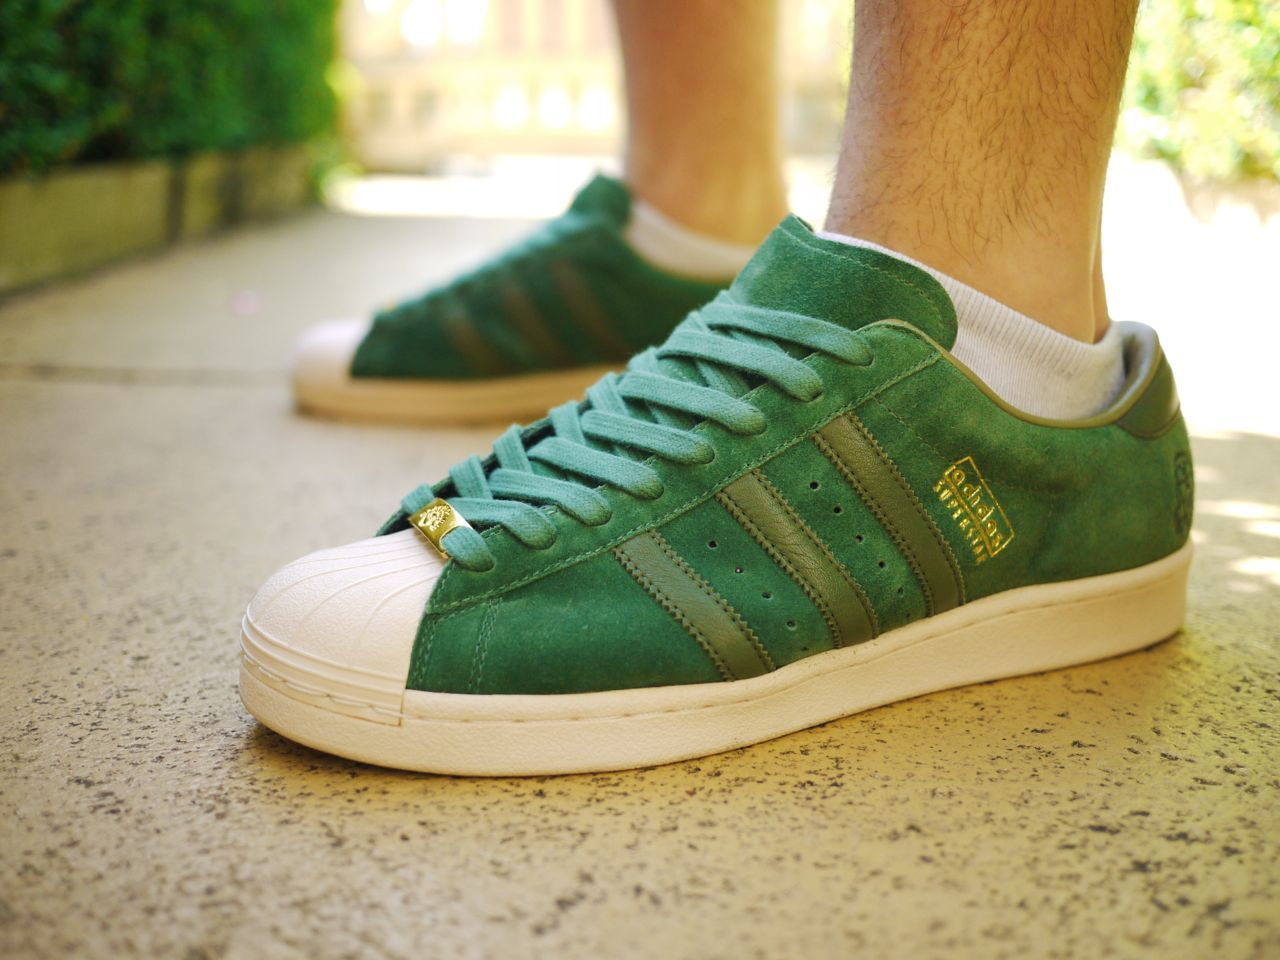 Кеды адидас зеленые. Кеды adidas Superstar зеленые. Адидас суперстар зеленые. Adidas Footpatrol. Adidas / кроссовки Superstar Green.